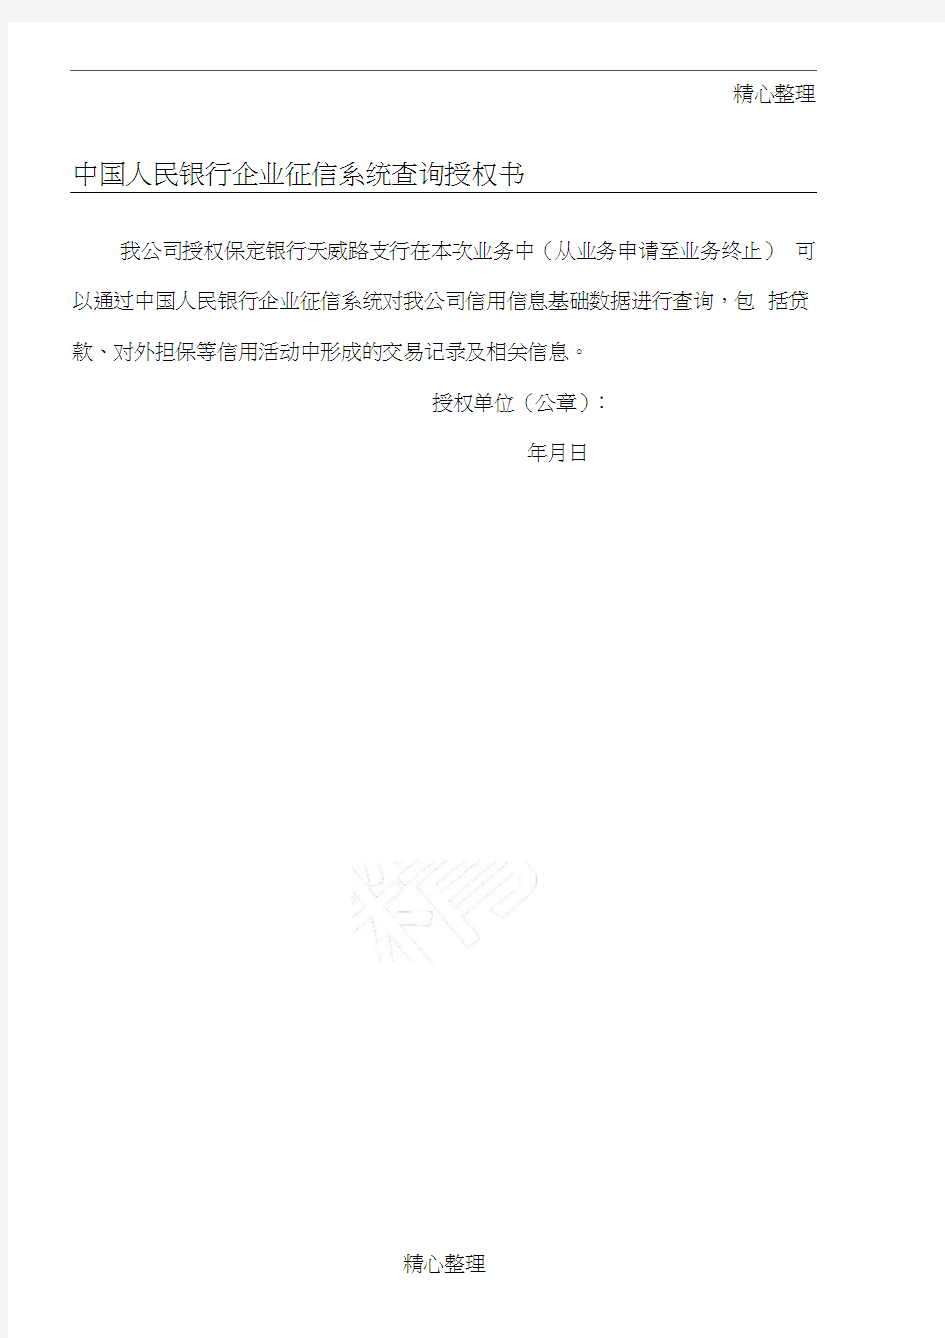 中国人民银行企业征信系统查询授权方案